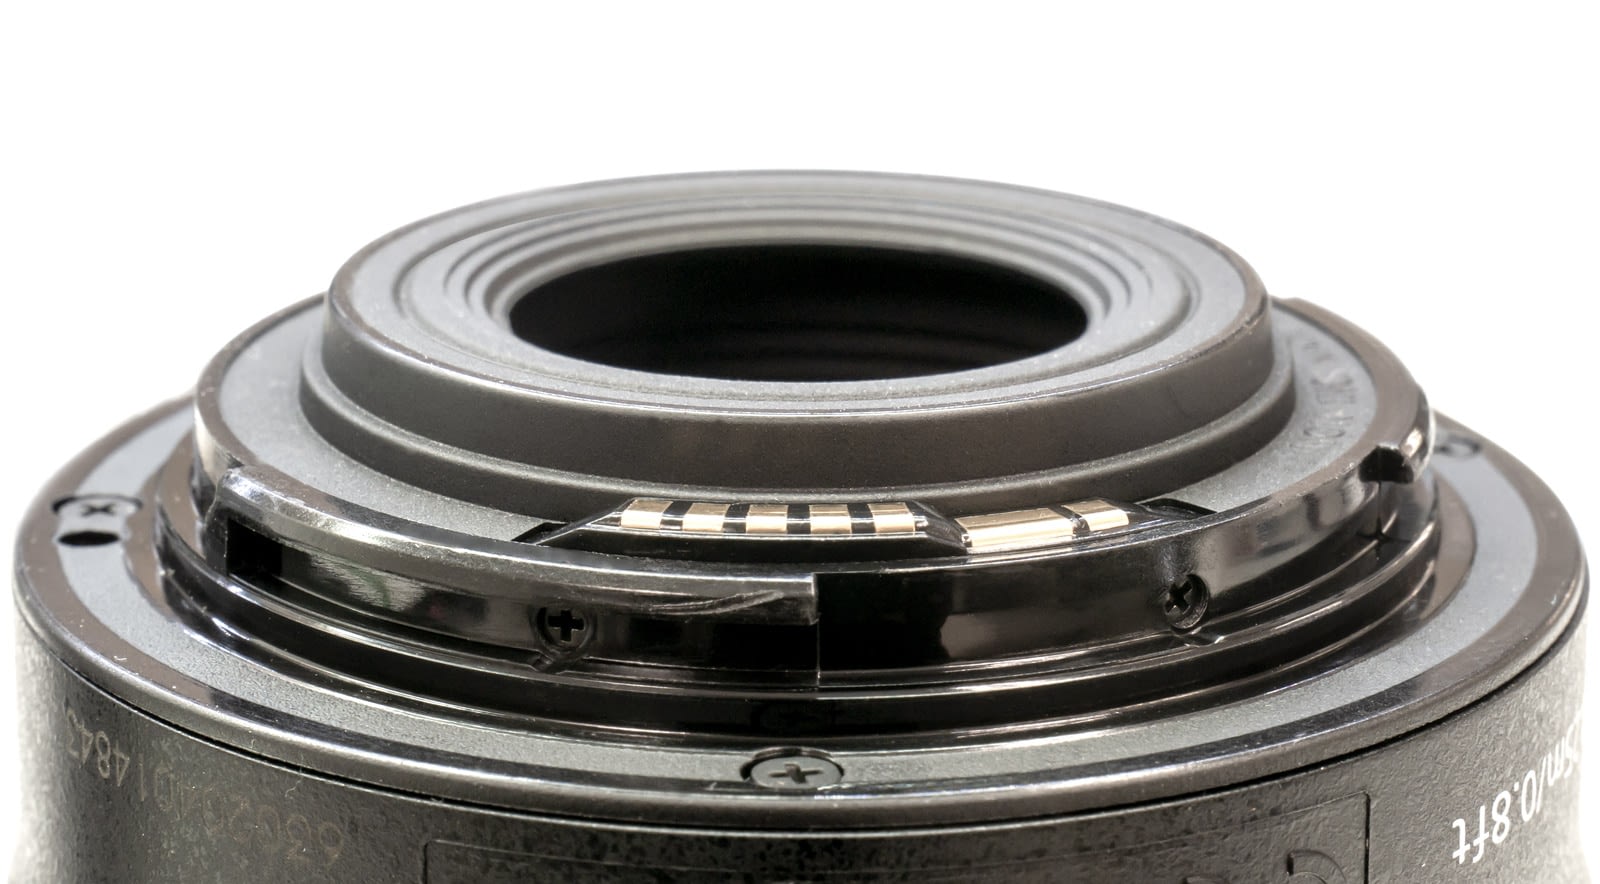 Bayonette lens mount